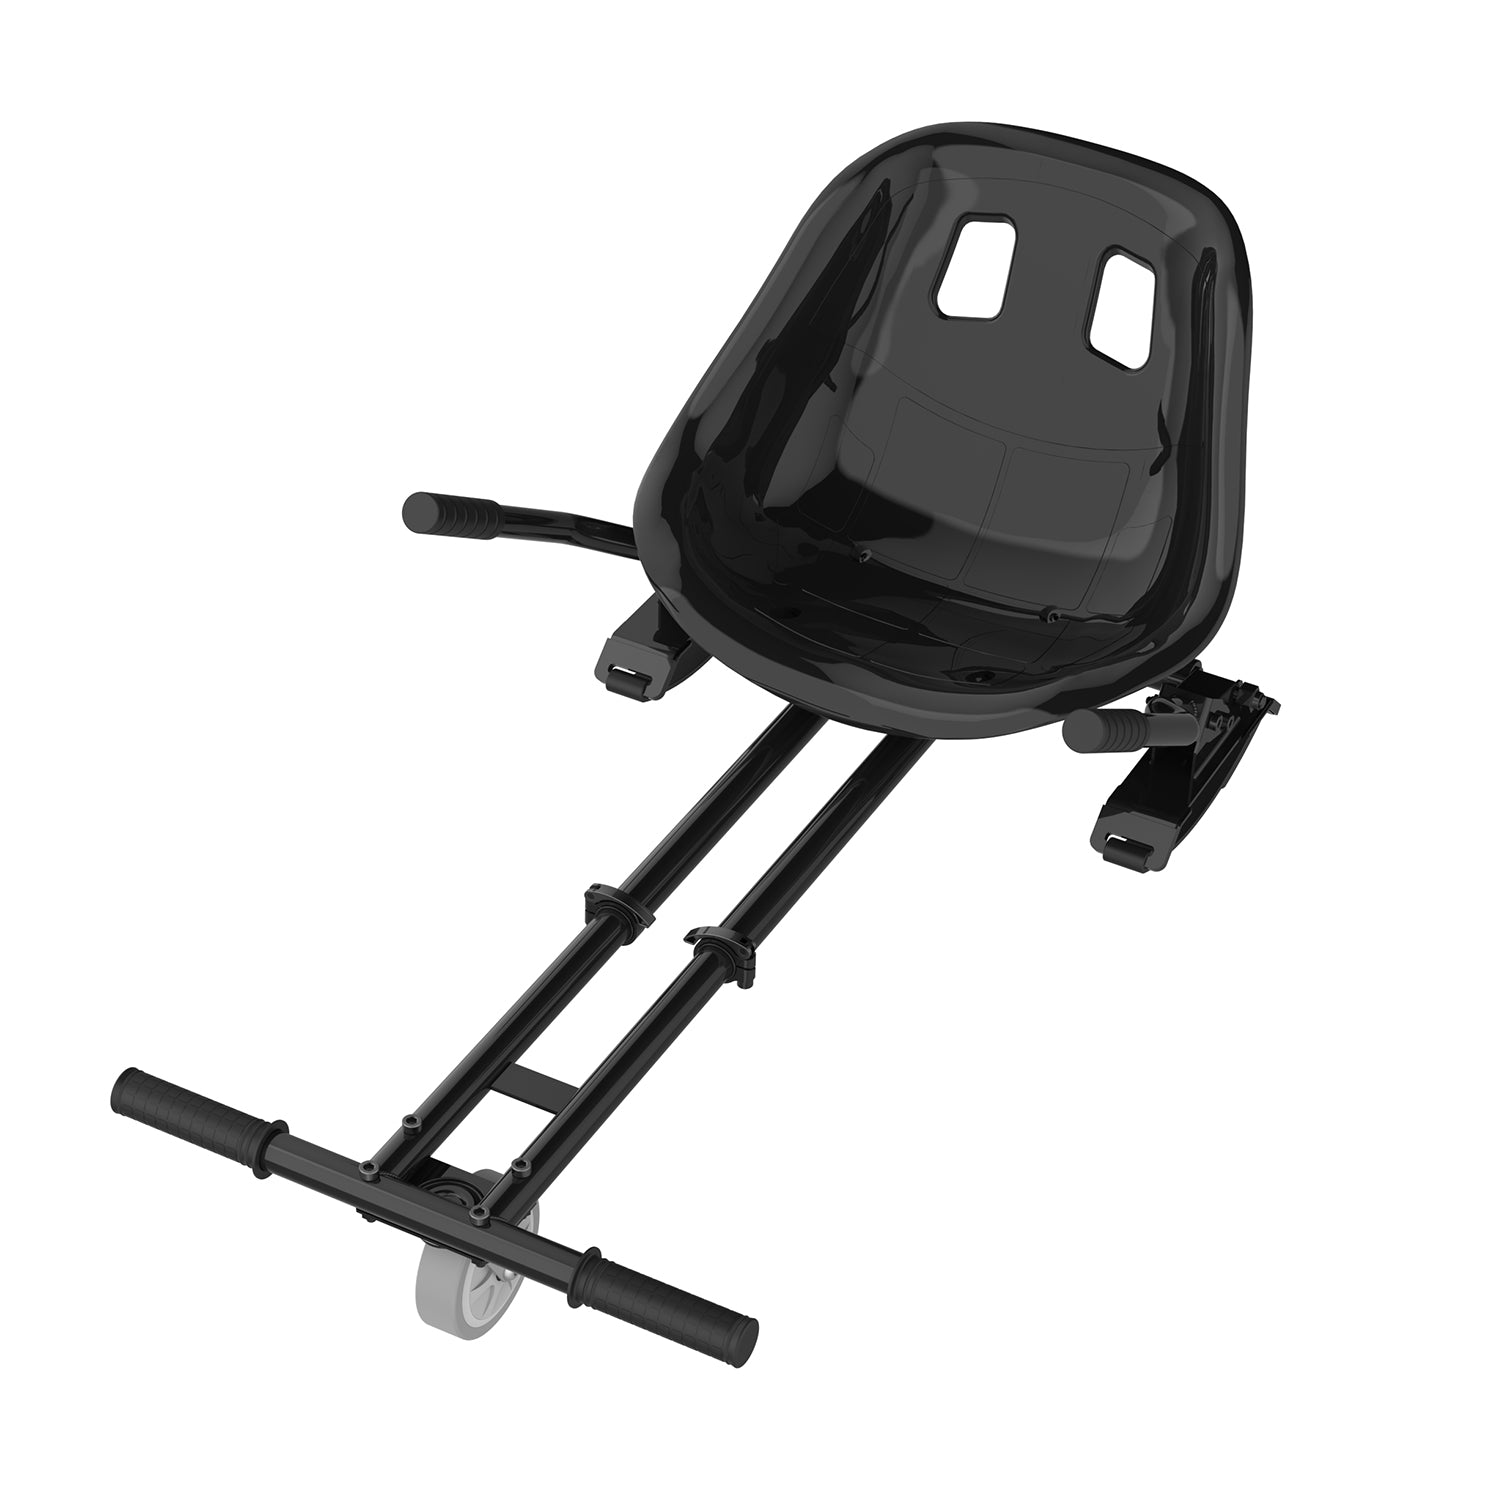 Hoverboard Go Kart Kit - Transform Hoverboard into GoKart - Grey